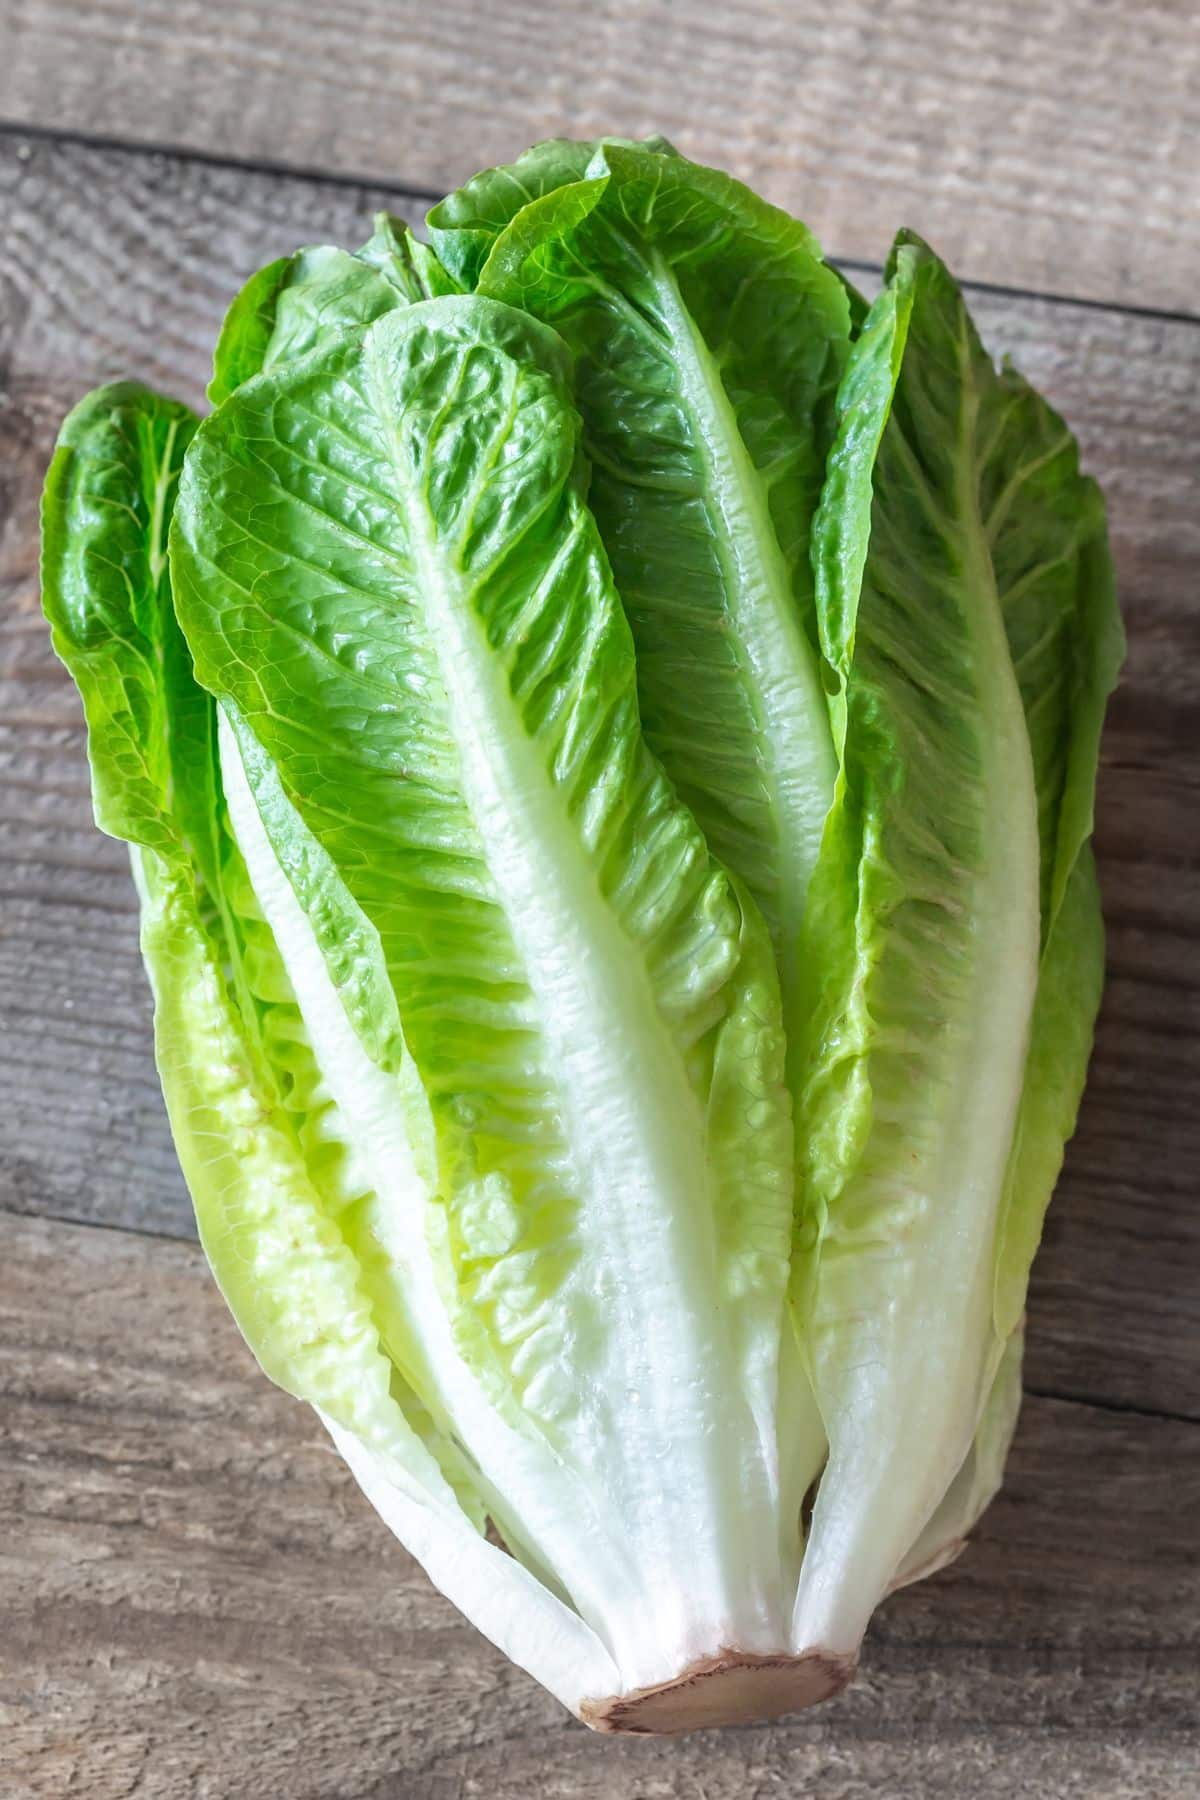 romaine lettuce on table.